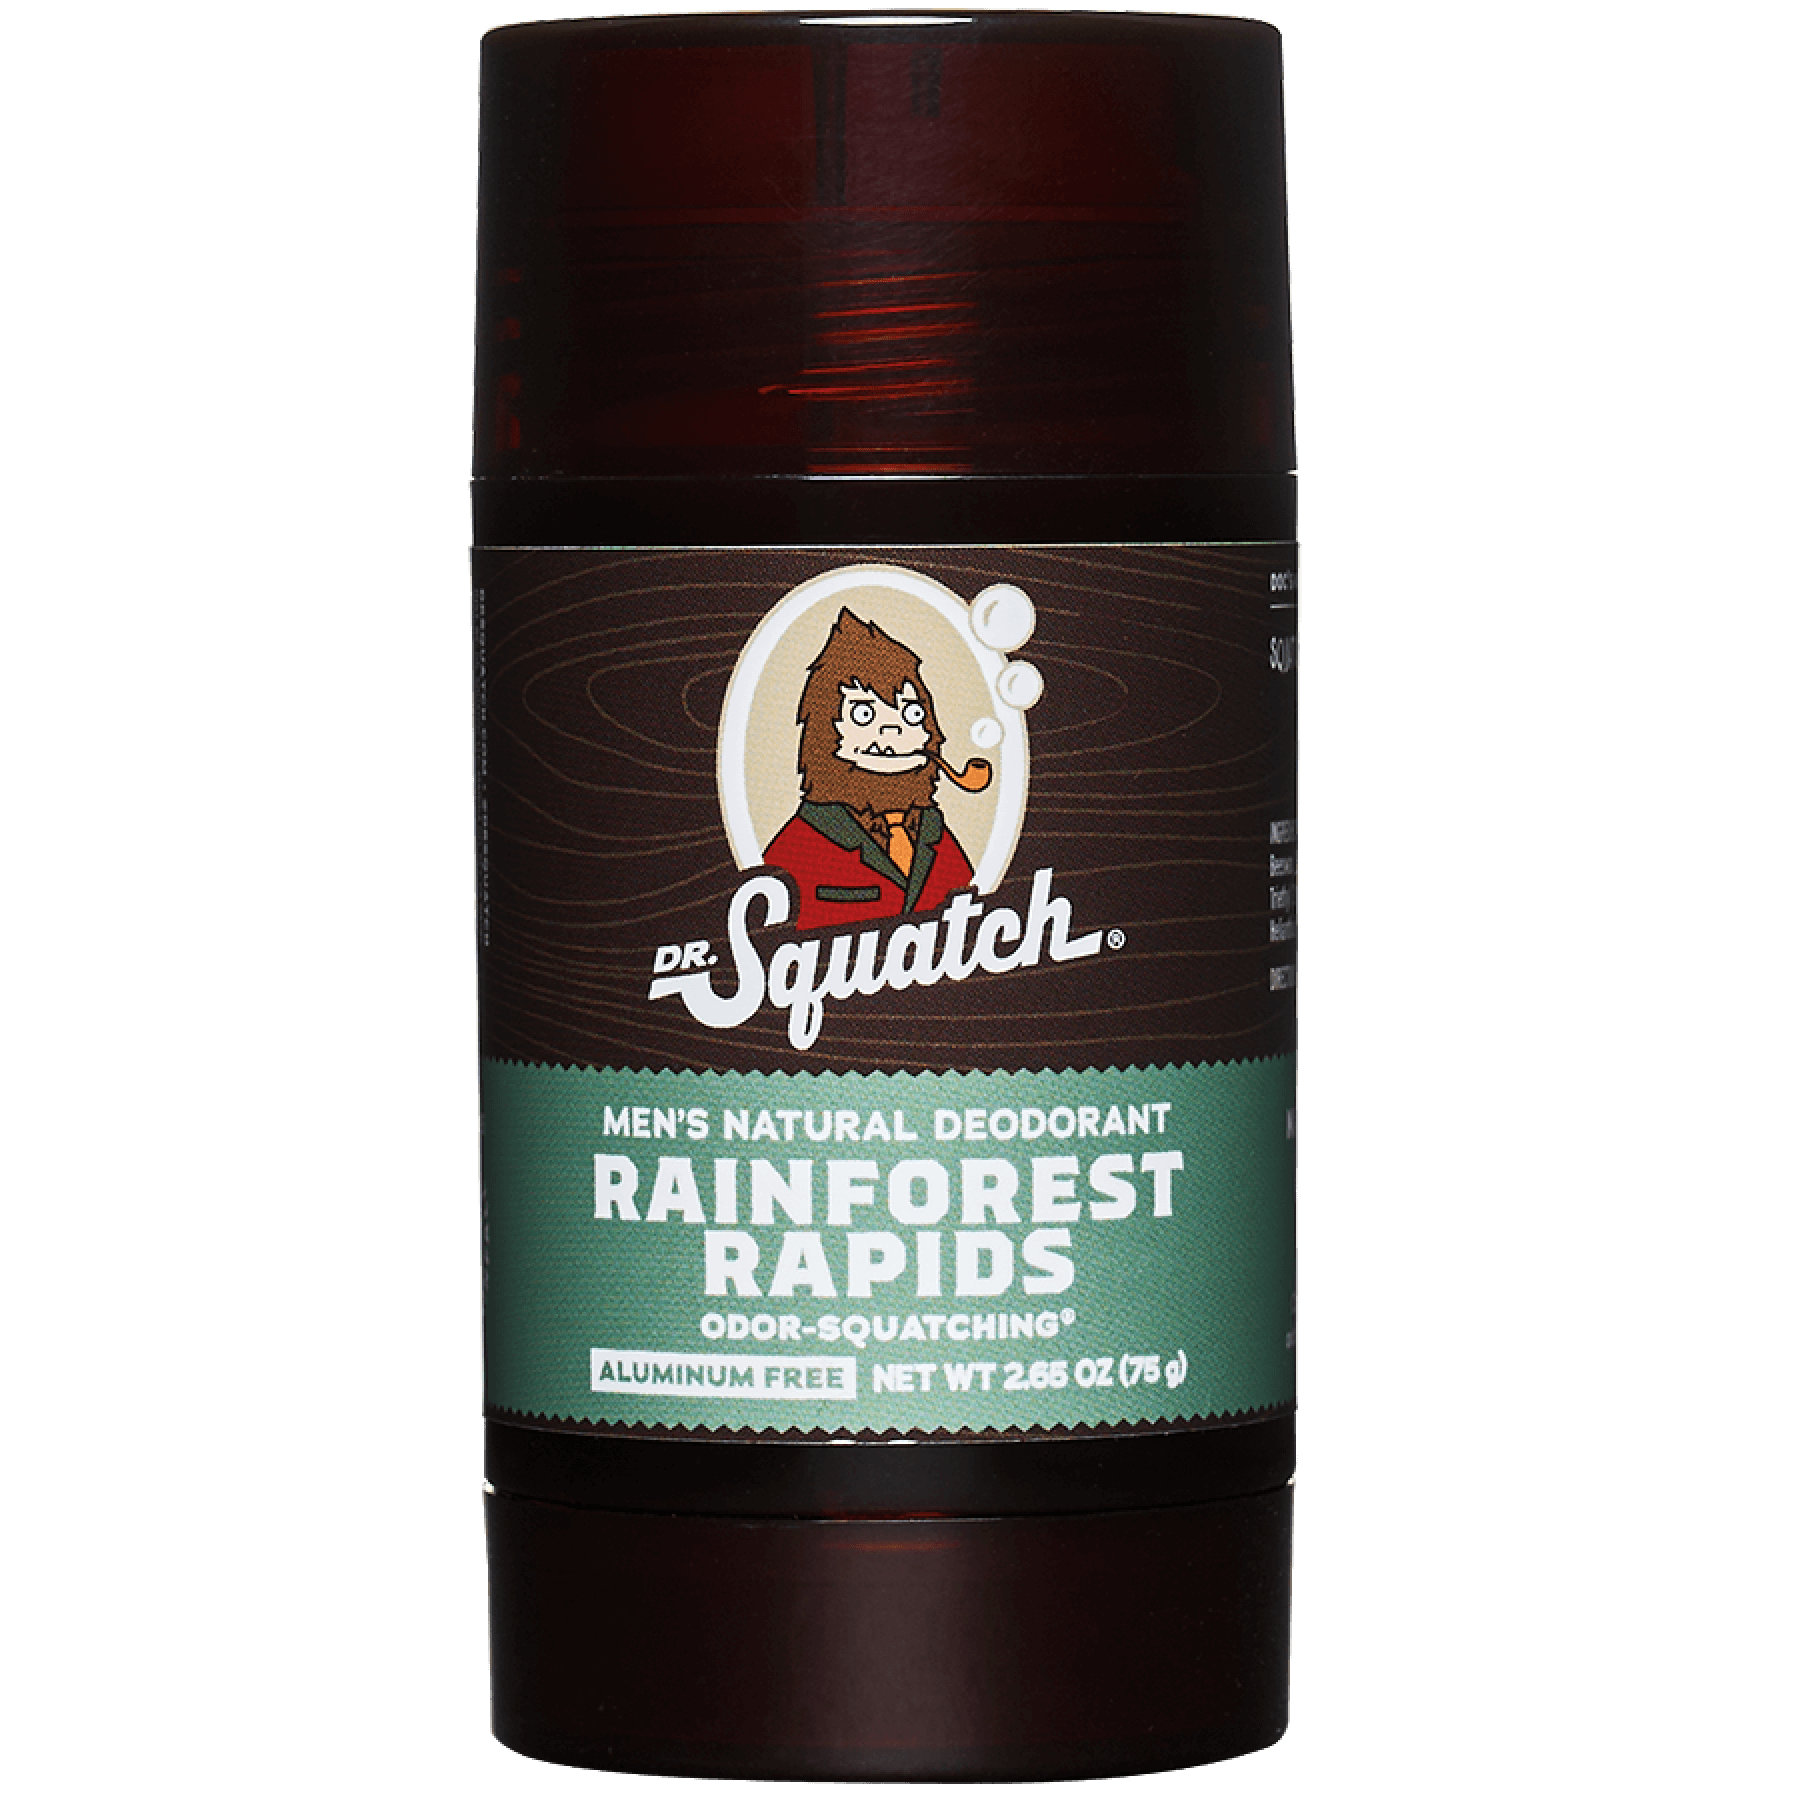 Rainforest Rapids Deodorant - 6 units